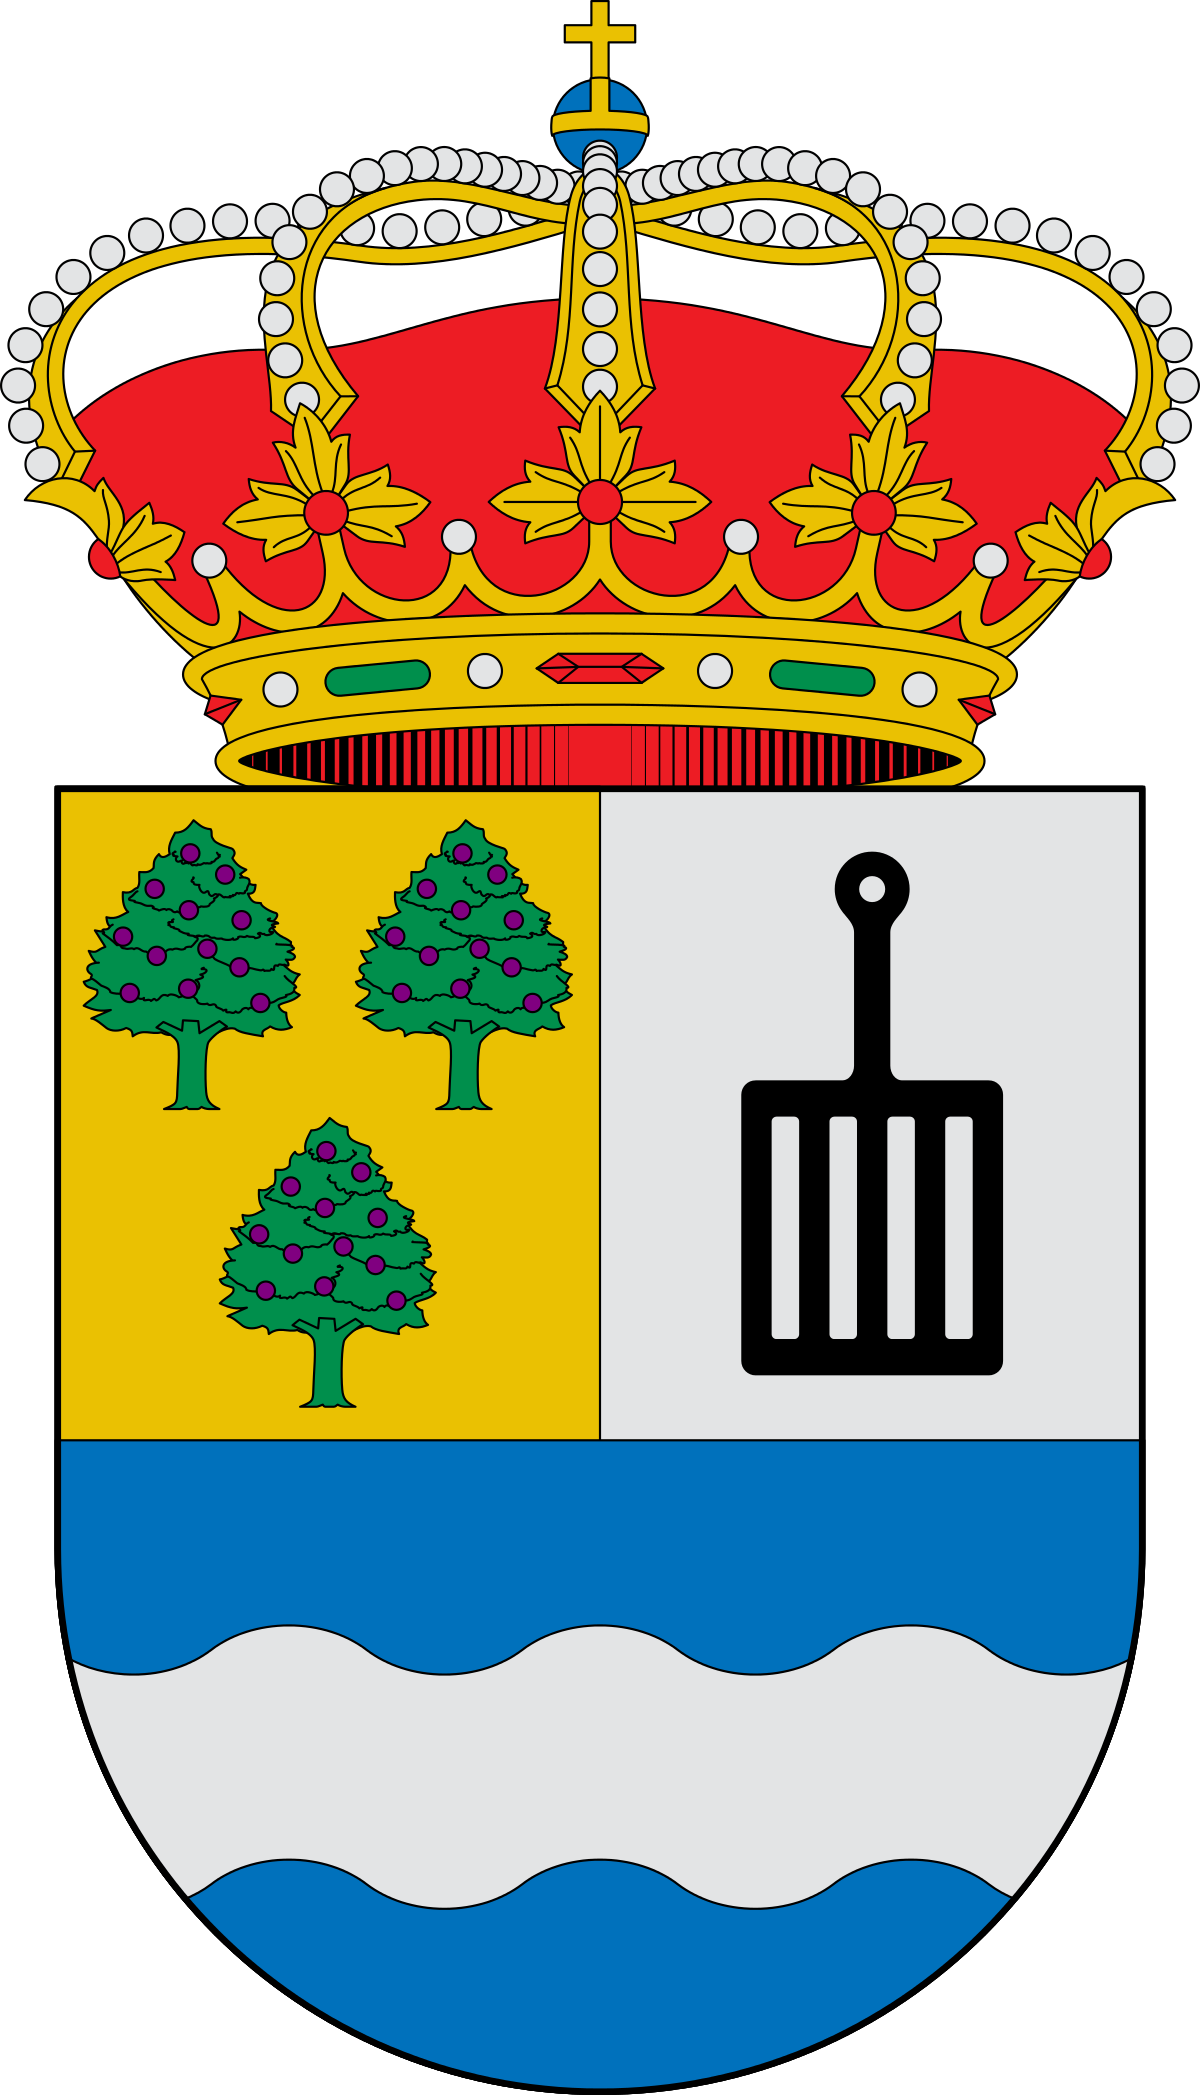 Escudo_de_Requejo_de_Sanabria_(Zamora).svg